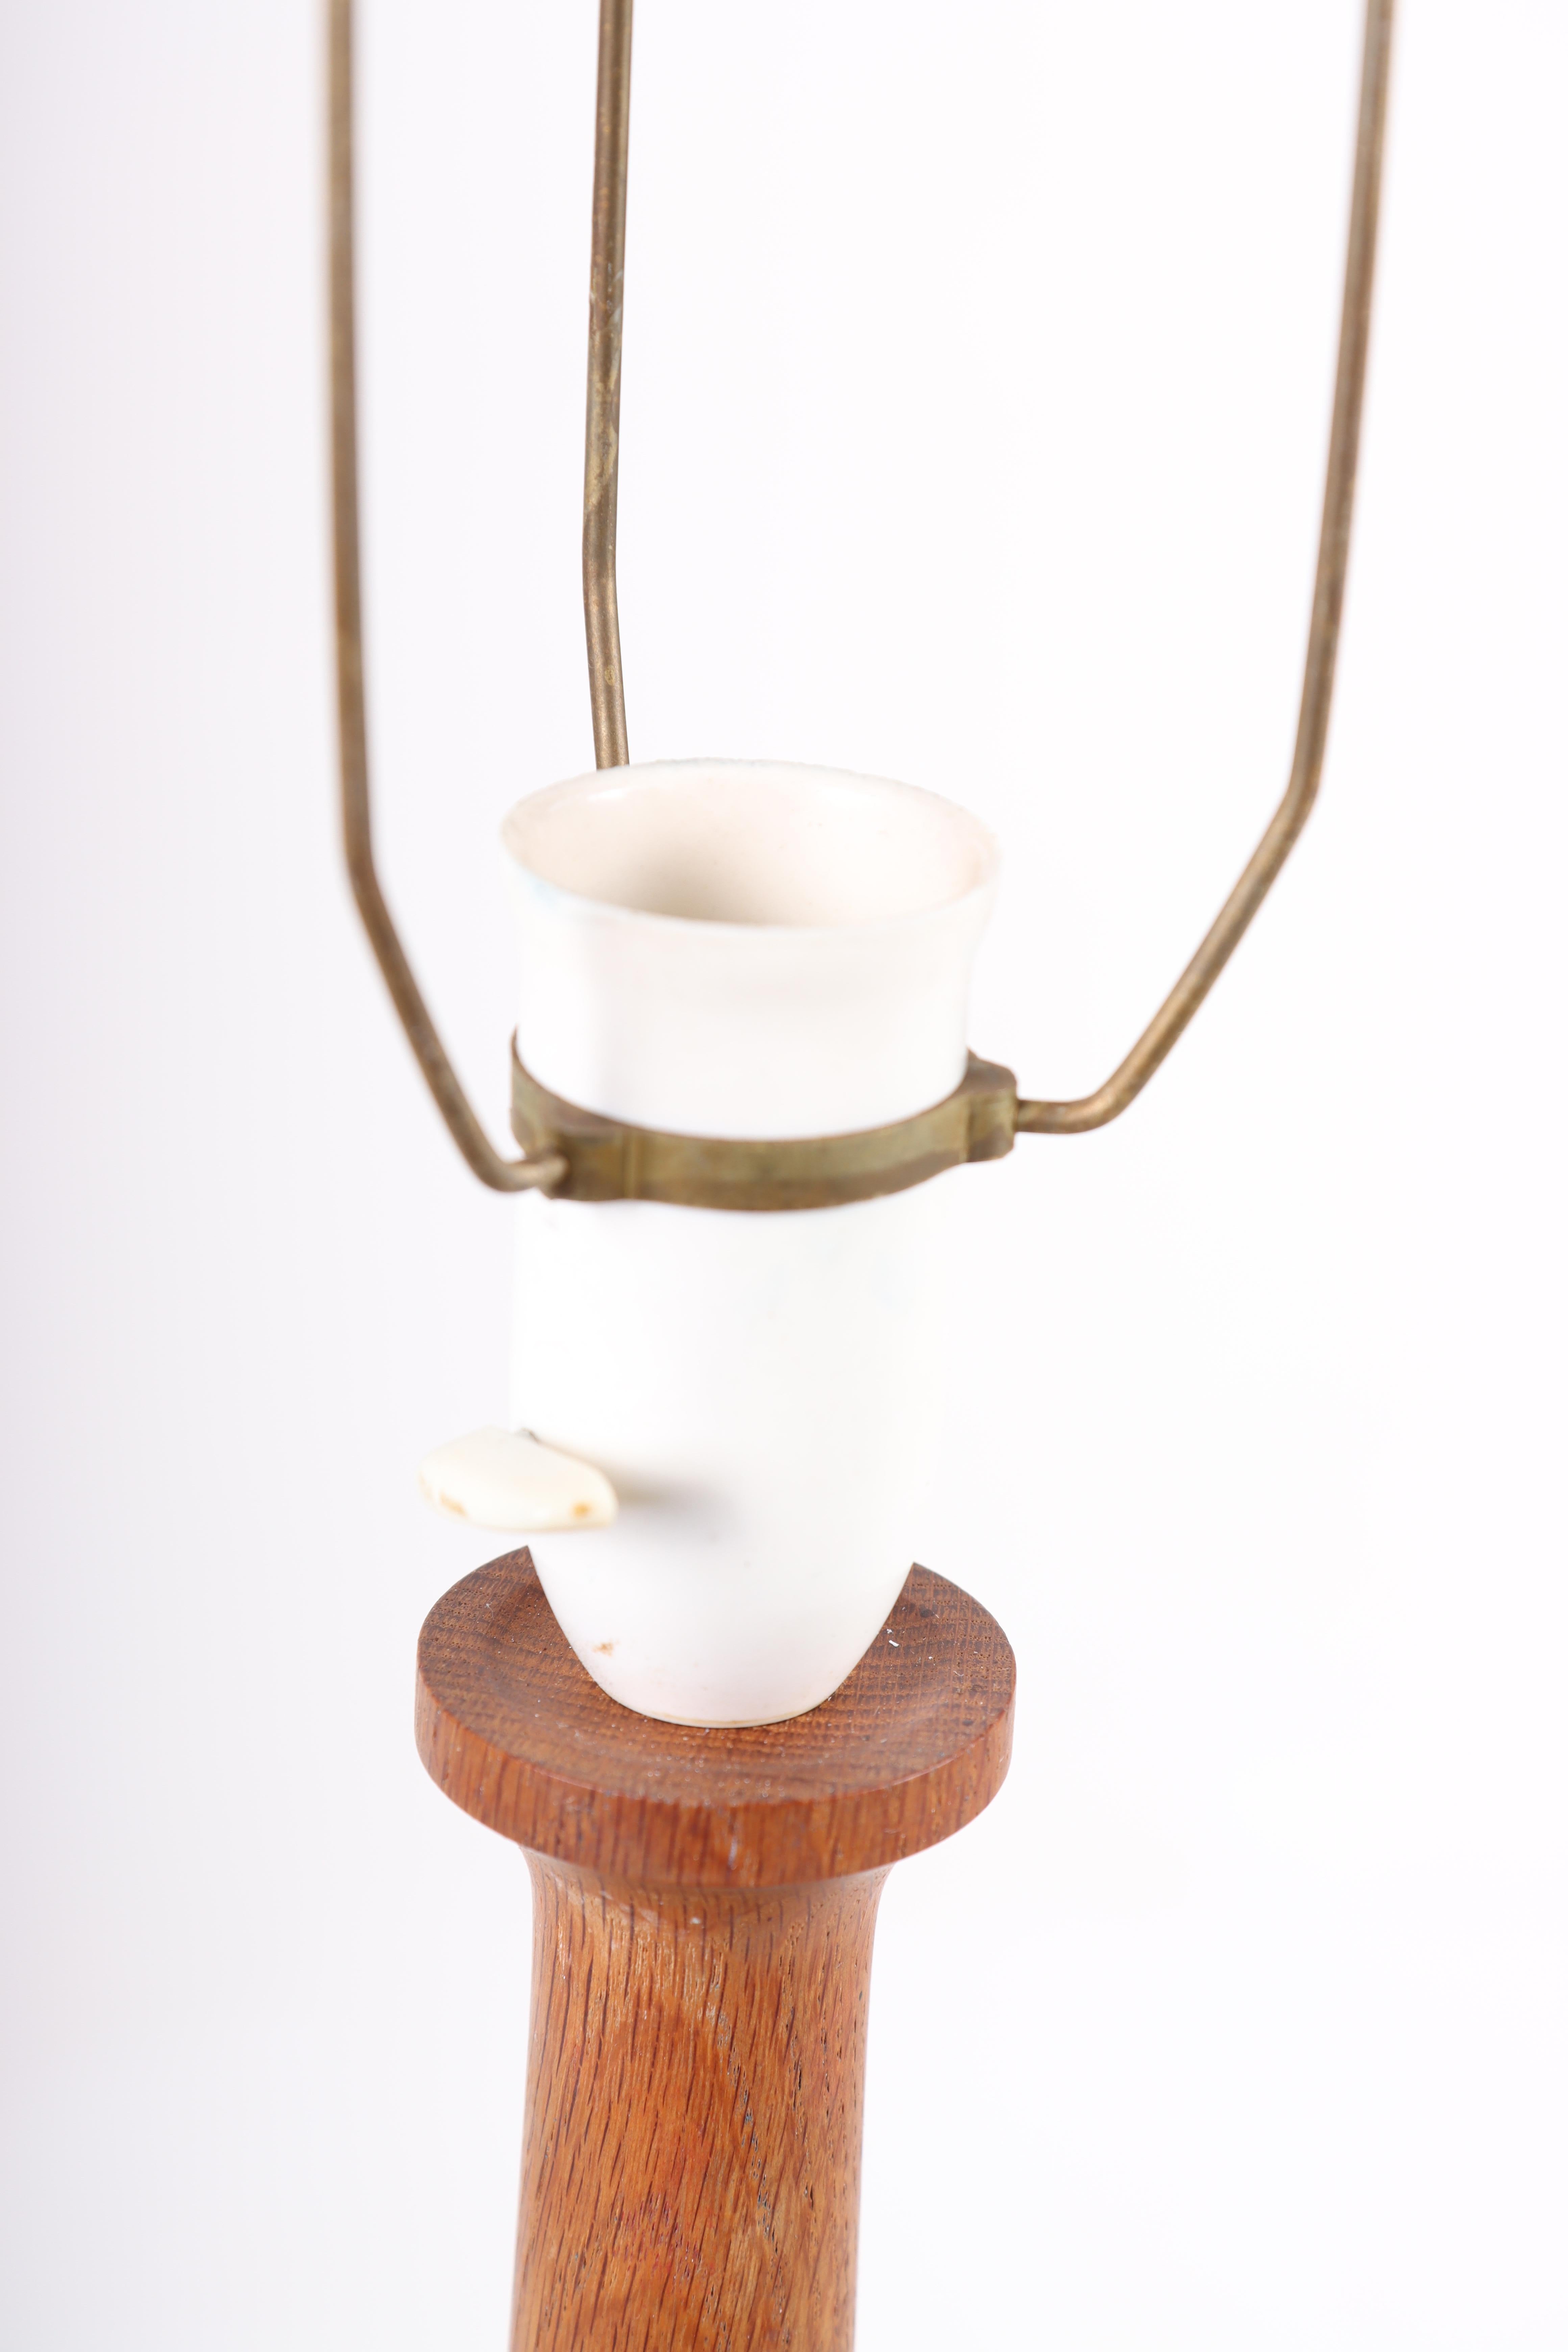 Scandinavian Modern Mid-Century Scandinavian Table Lamp in Solid Oak, Made in Denmark, 1960s For Sale